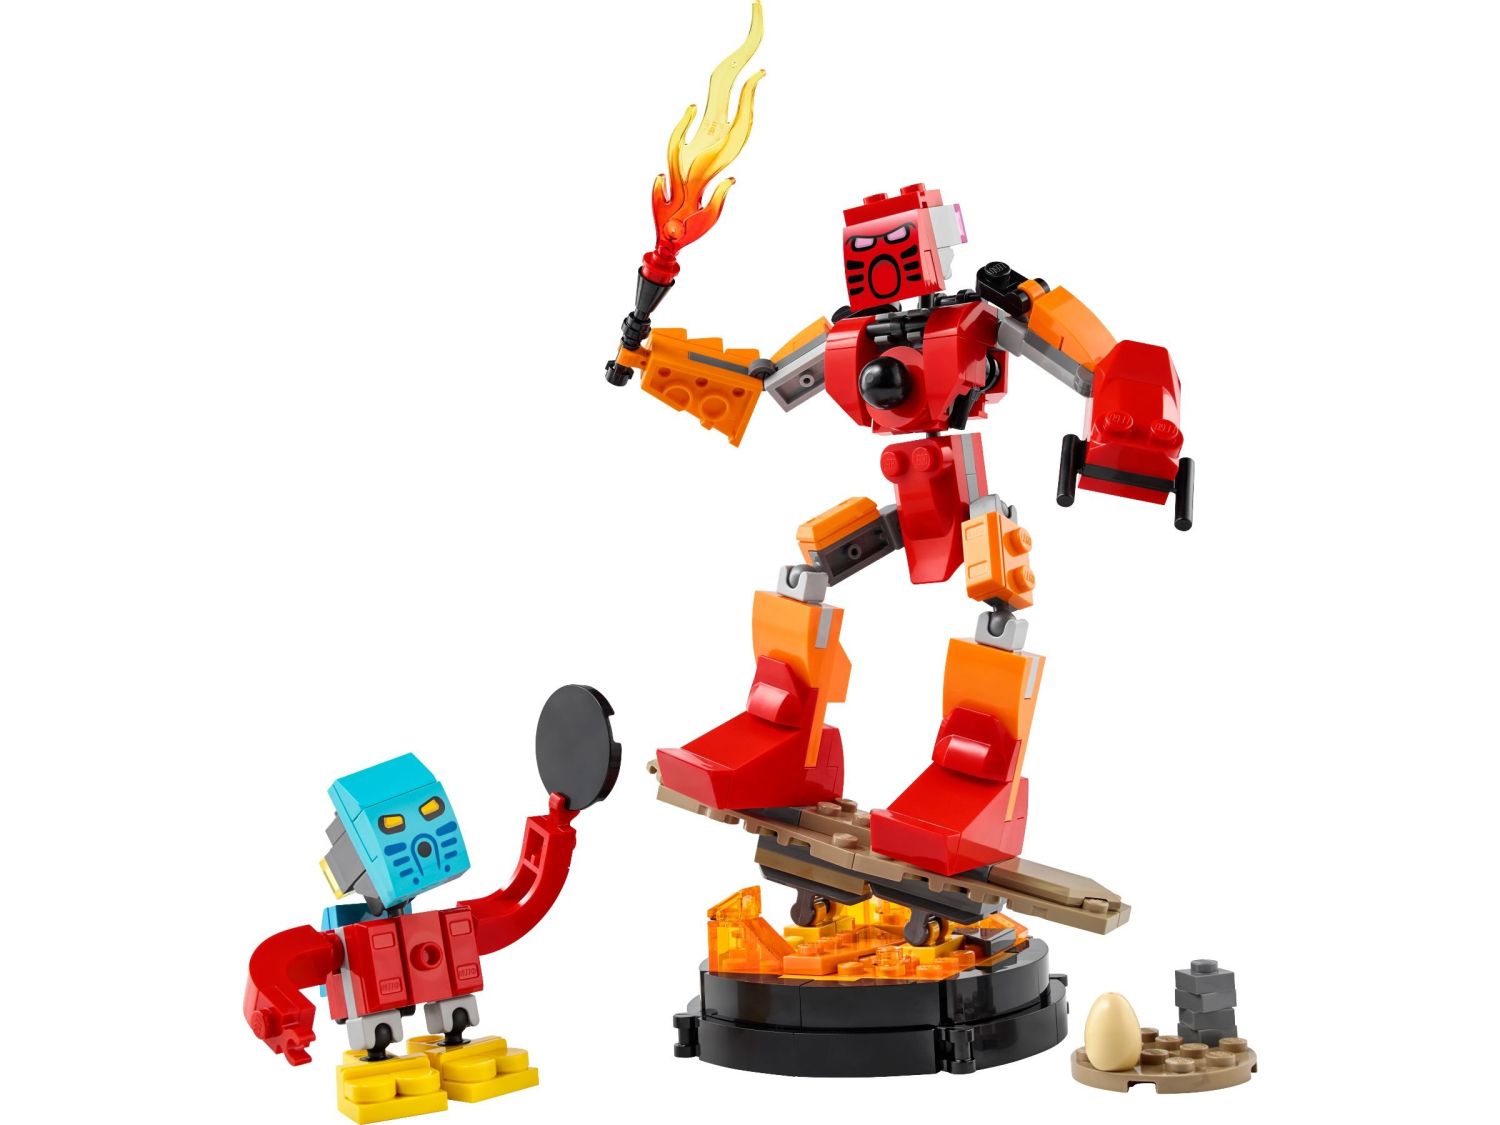 LEGO Bionicle is back!